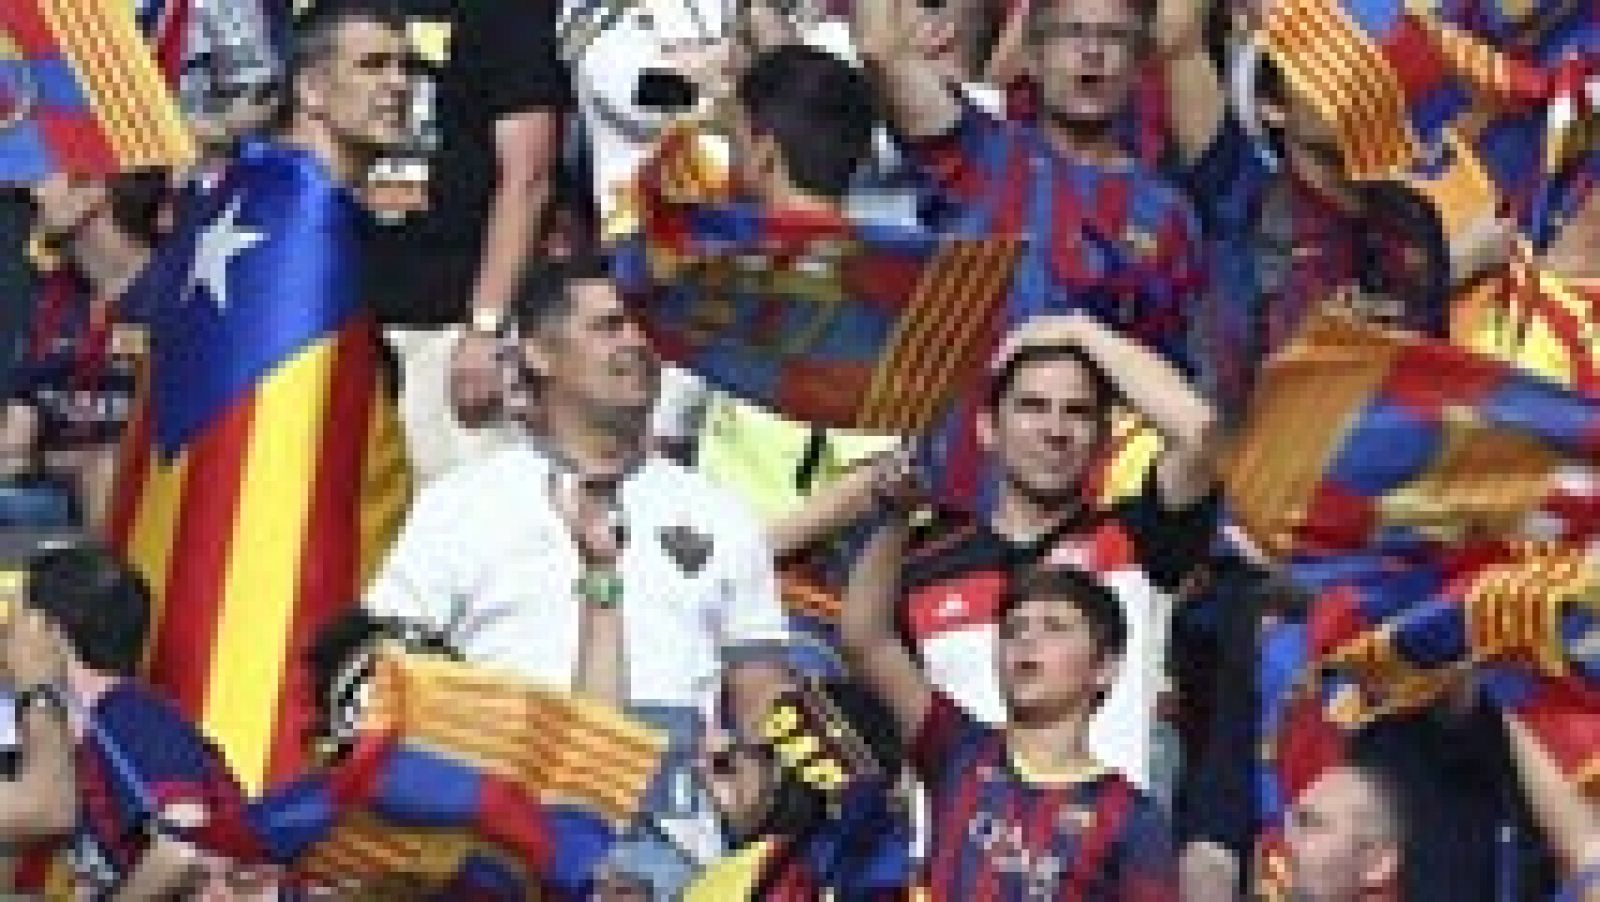 La Comisión de Control, Ética y Disciplina de la UEFA ha acordado este jueves imponer una multa de 30.000 euros al Fútbol Club Barcelona por la masiva presencia de banderas independentistas y de cánticos de ese signo, durante la final de la Liga de Campeones, que se disputó el pasado 6 de junio en Berlín.